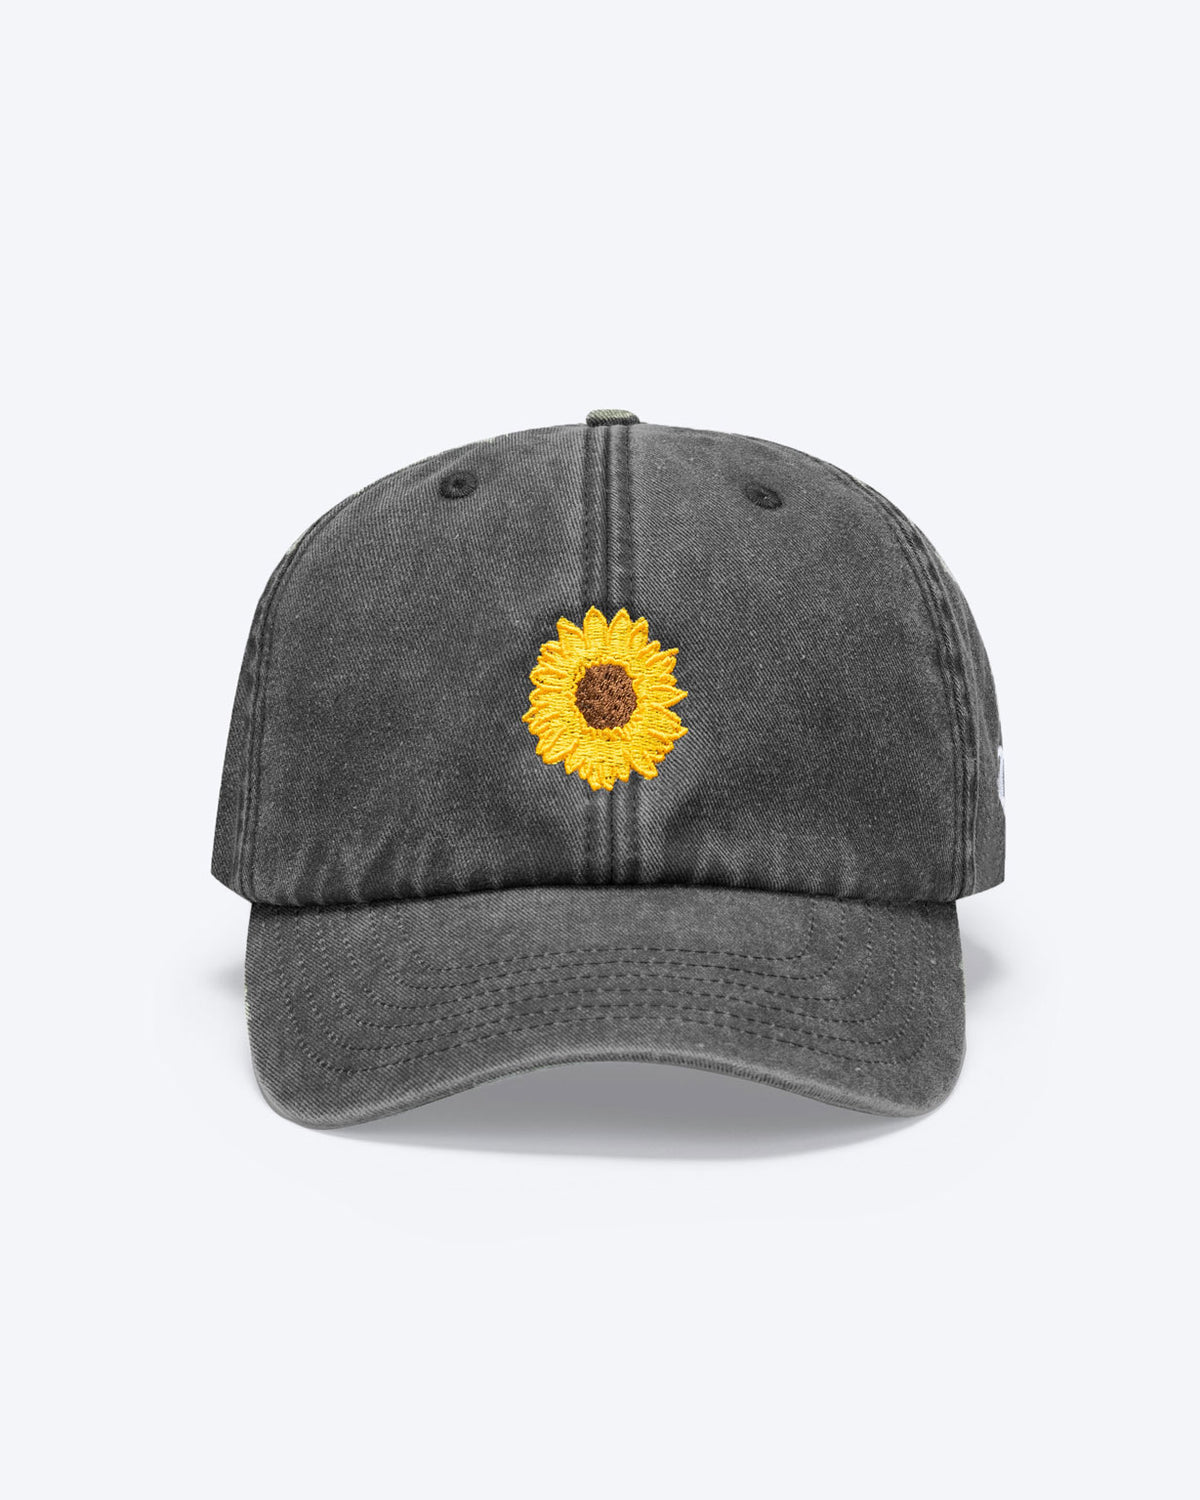 Eine Vintage dunkelgraue bayerische Cap mit einer Sonnenblume vorne als Motiv zu erkennen.